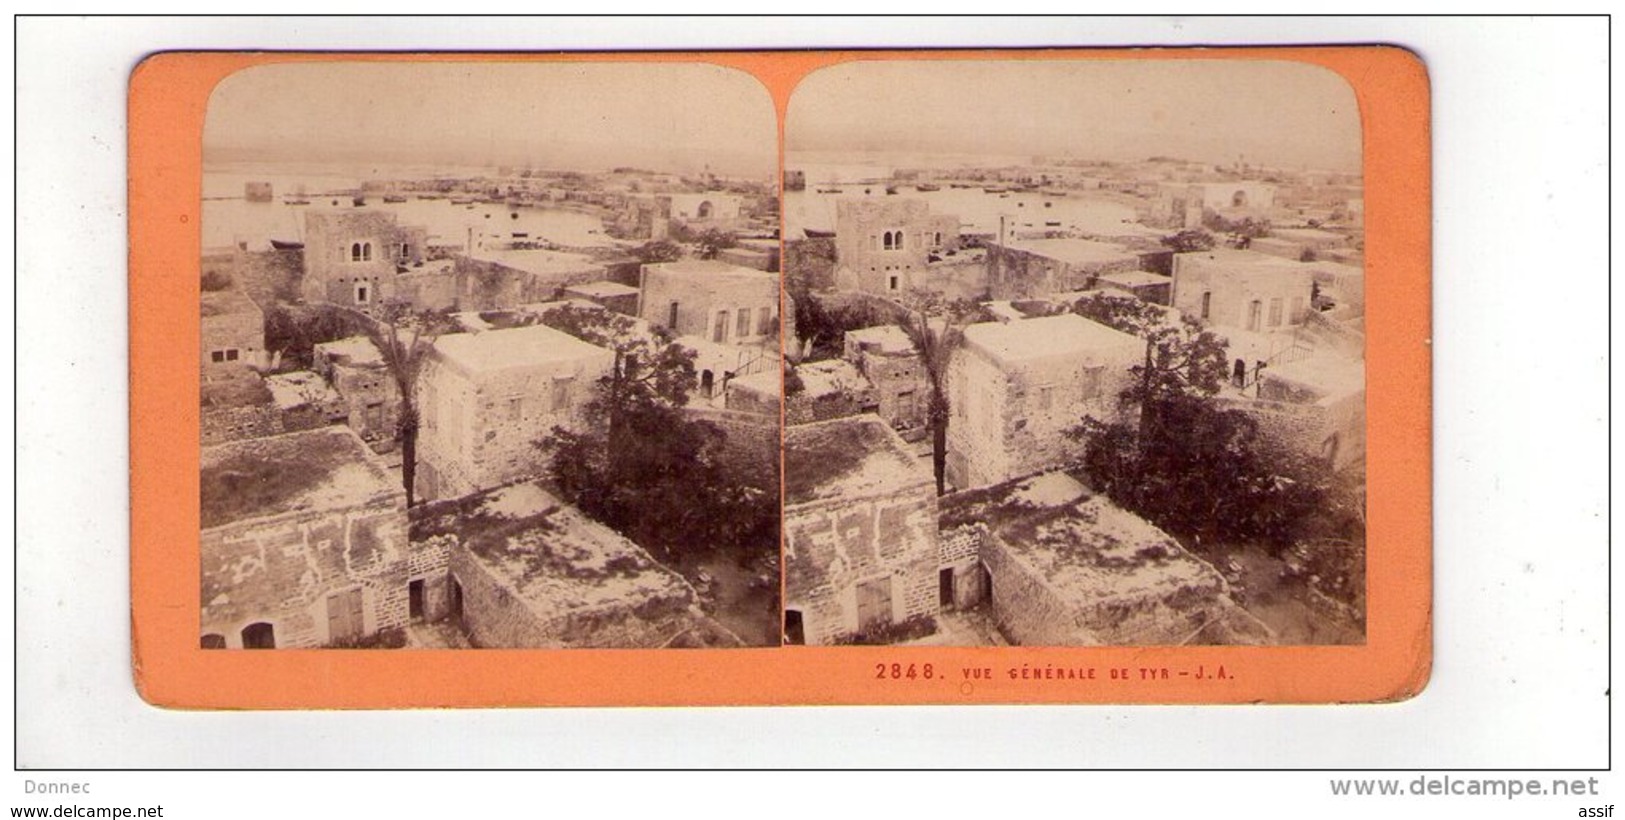 PHOTO STÉREO , Liban ( Lebanon ), Vue Générale De Tyr , ( Vers 1870 ) , éd. J. A. ( Andrieu ? )2848 - Photos Stéréoscopiques